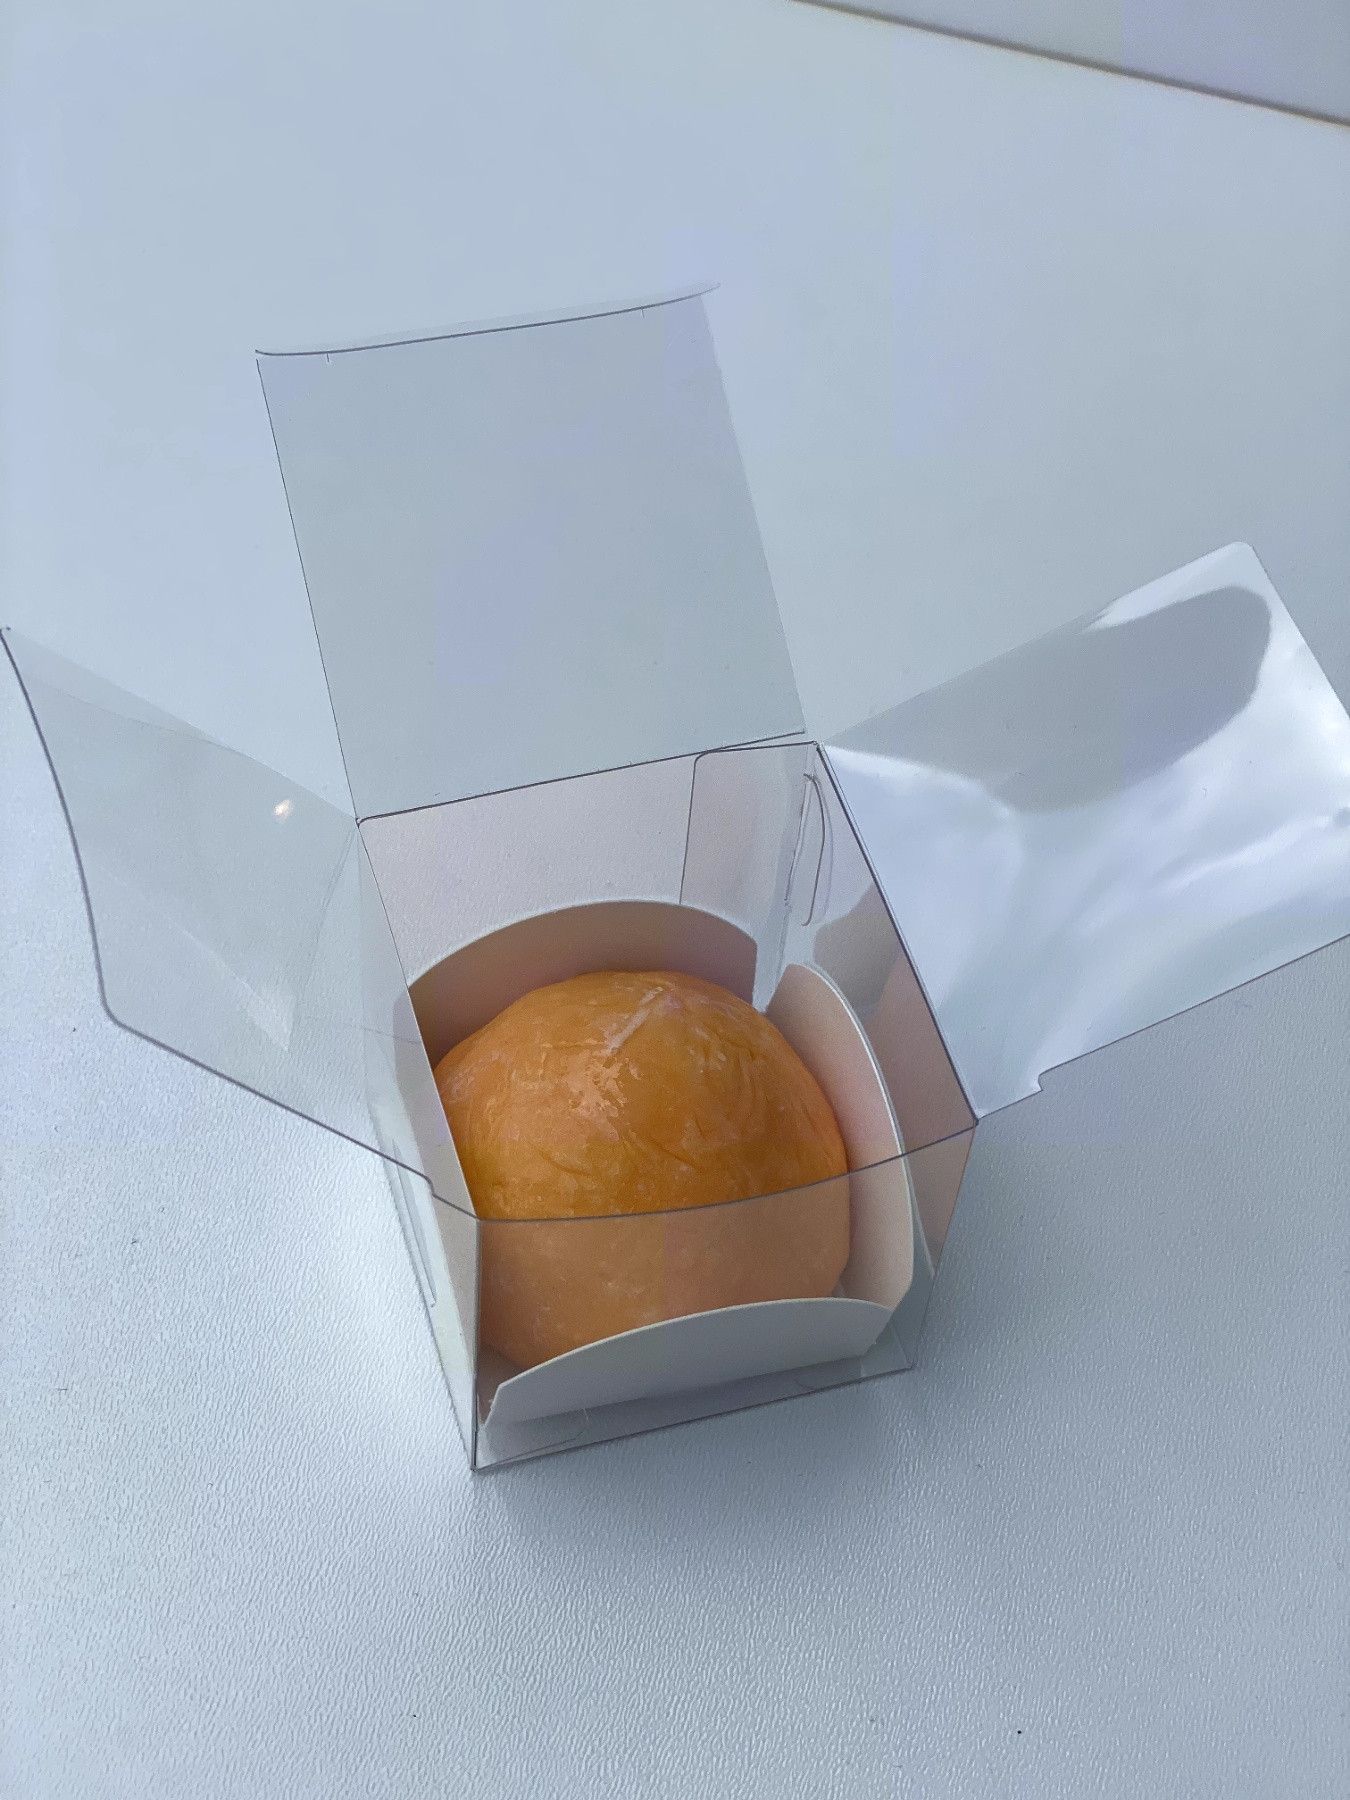 ⋗ Коробка КУБ для моти, макаронс 5,5х5,5х5,5 см купить в Украине ➛ CakeShop.com.ua, фото